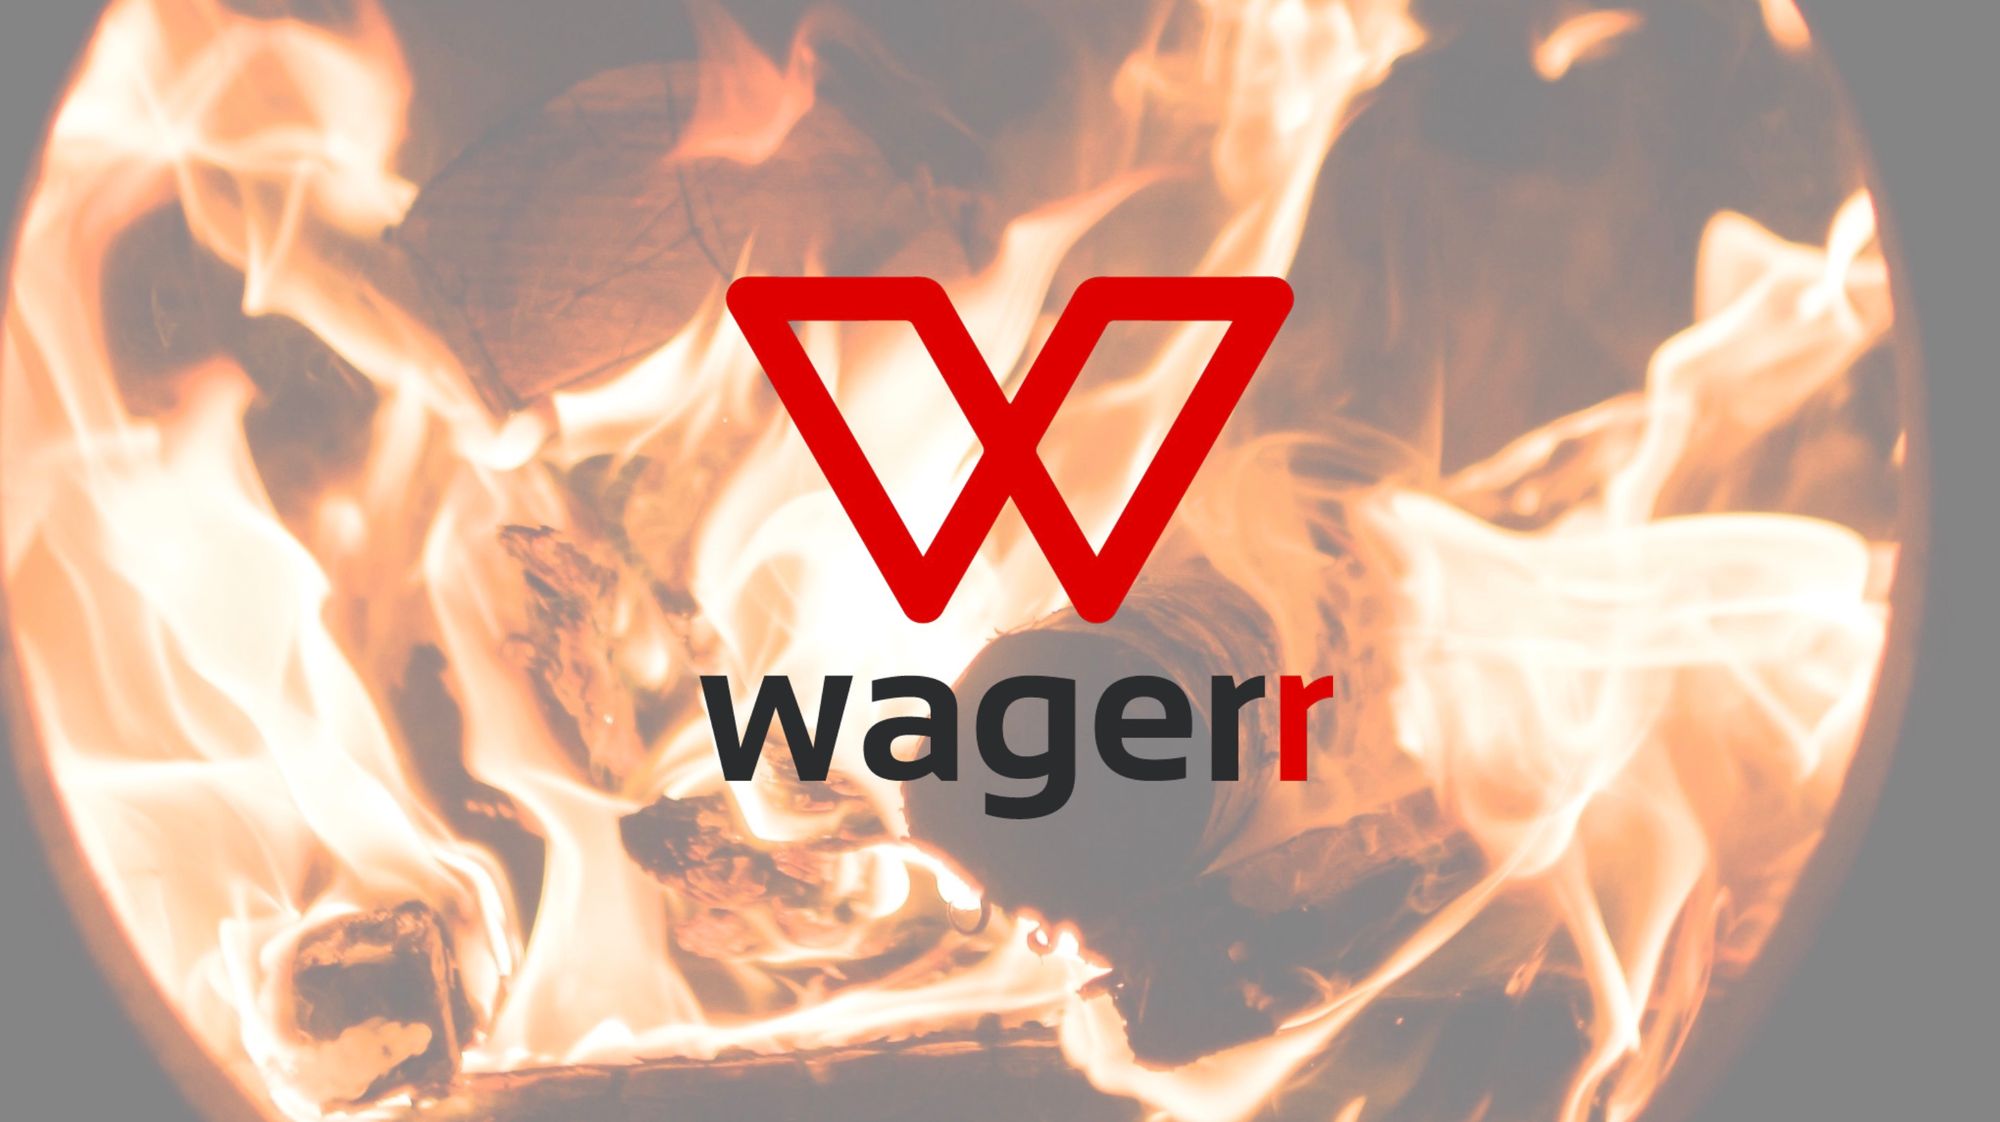 Wagerr Burn Report Week 8/26